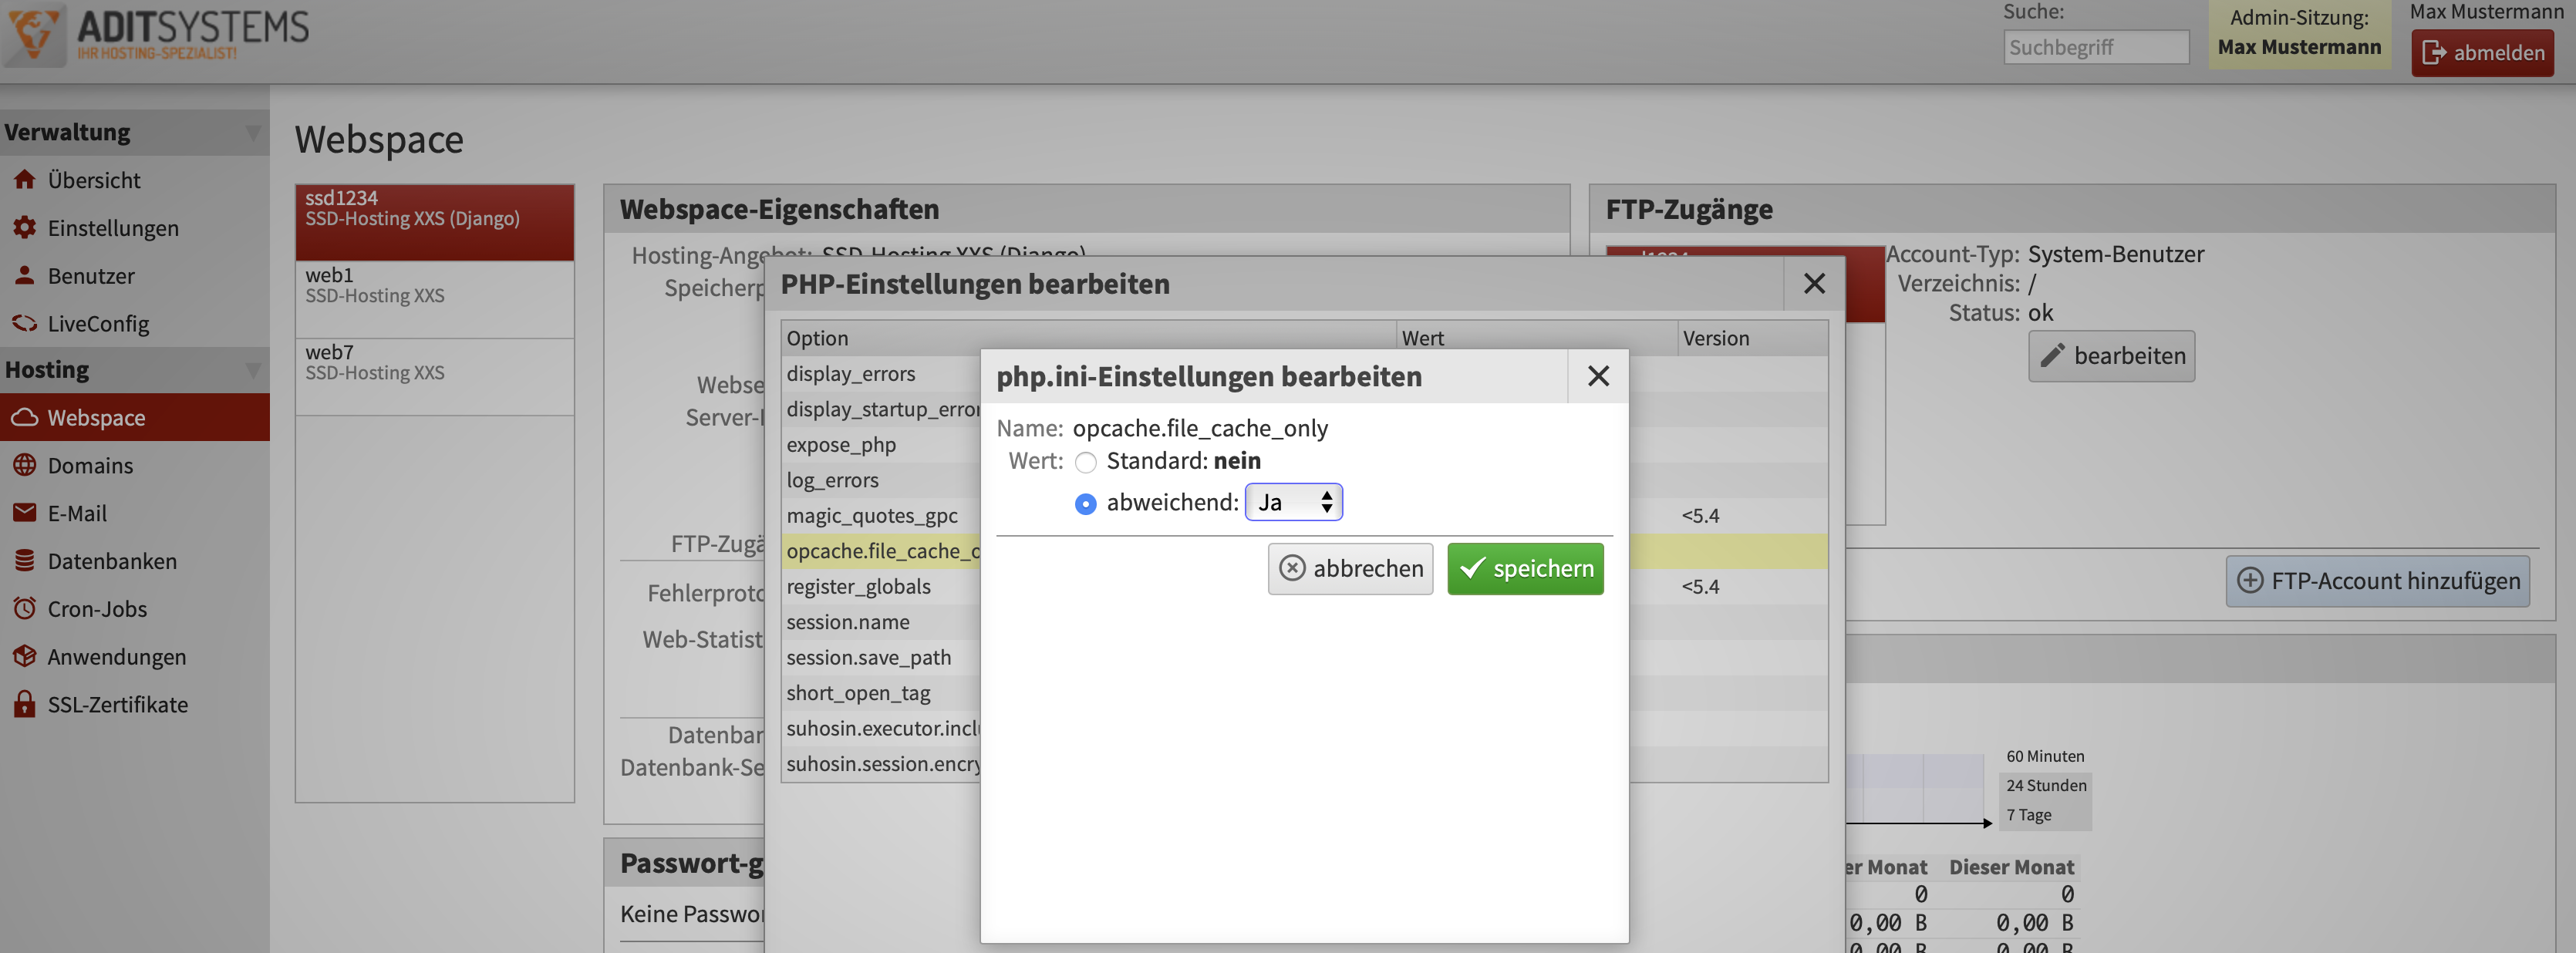 opcache.file_cache_only in LiveConfig unter Webspace in den PHP-Einstellungen auf den Wert abweichend und ja stellen.